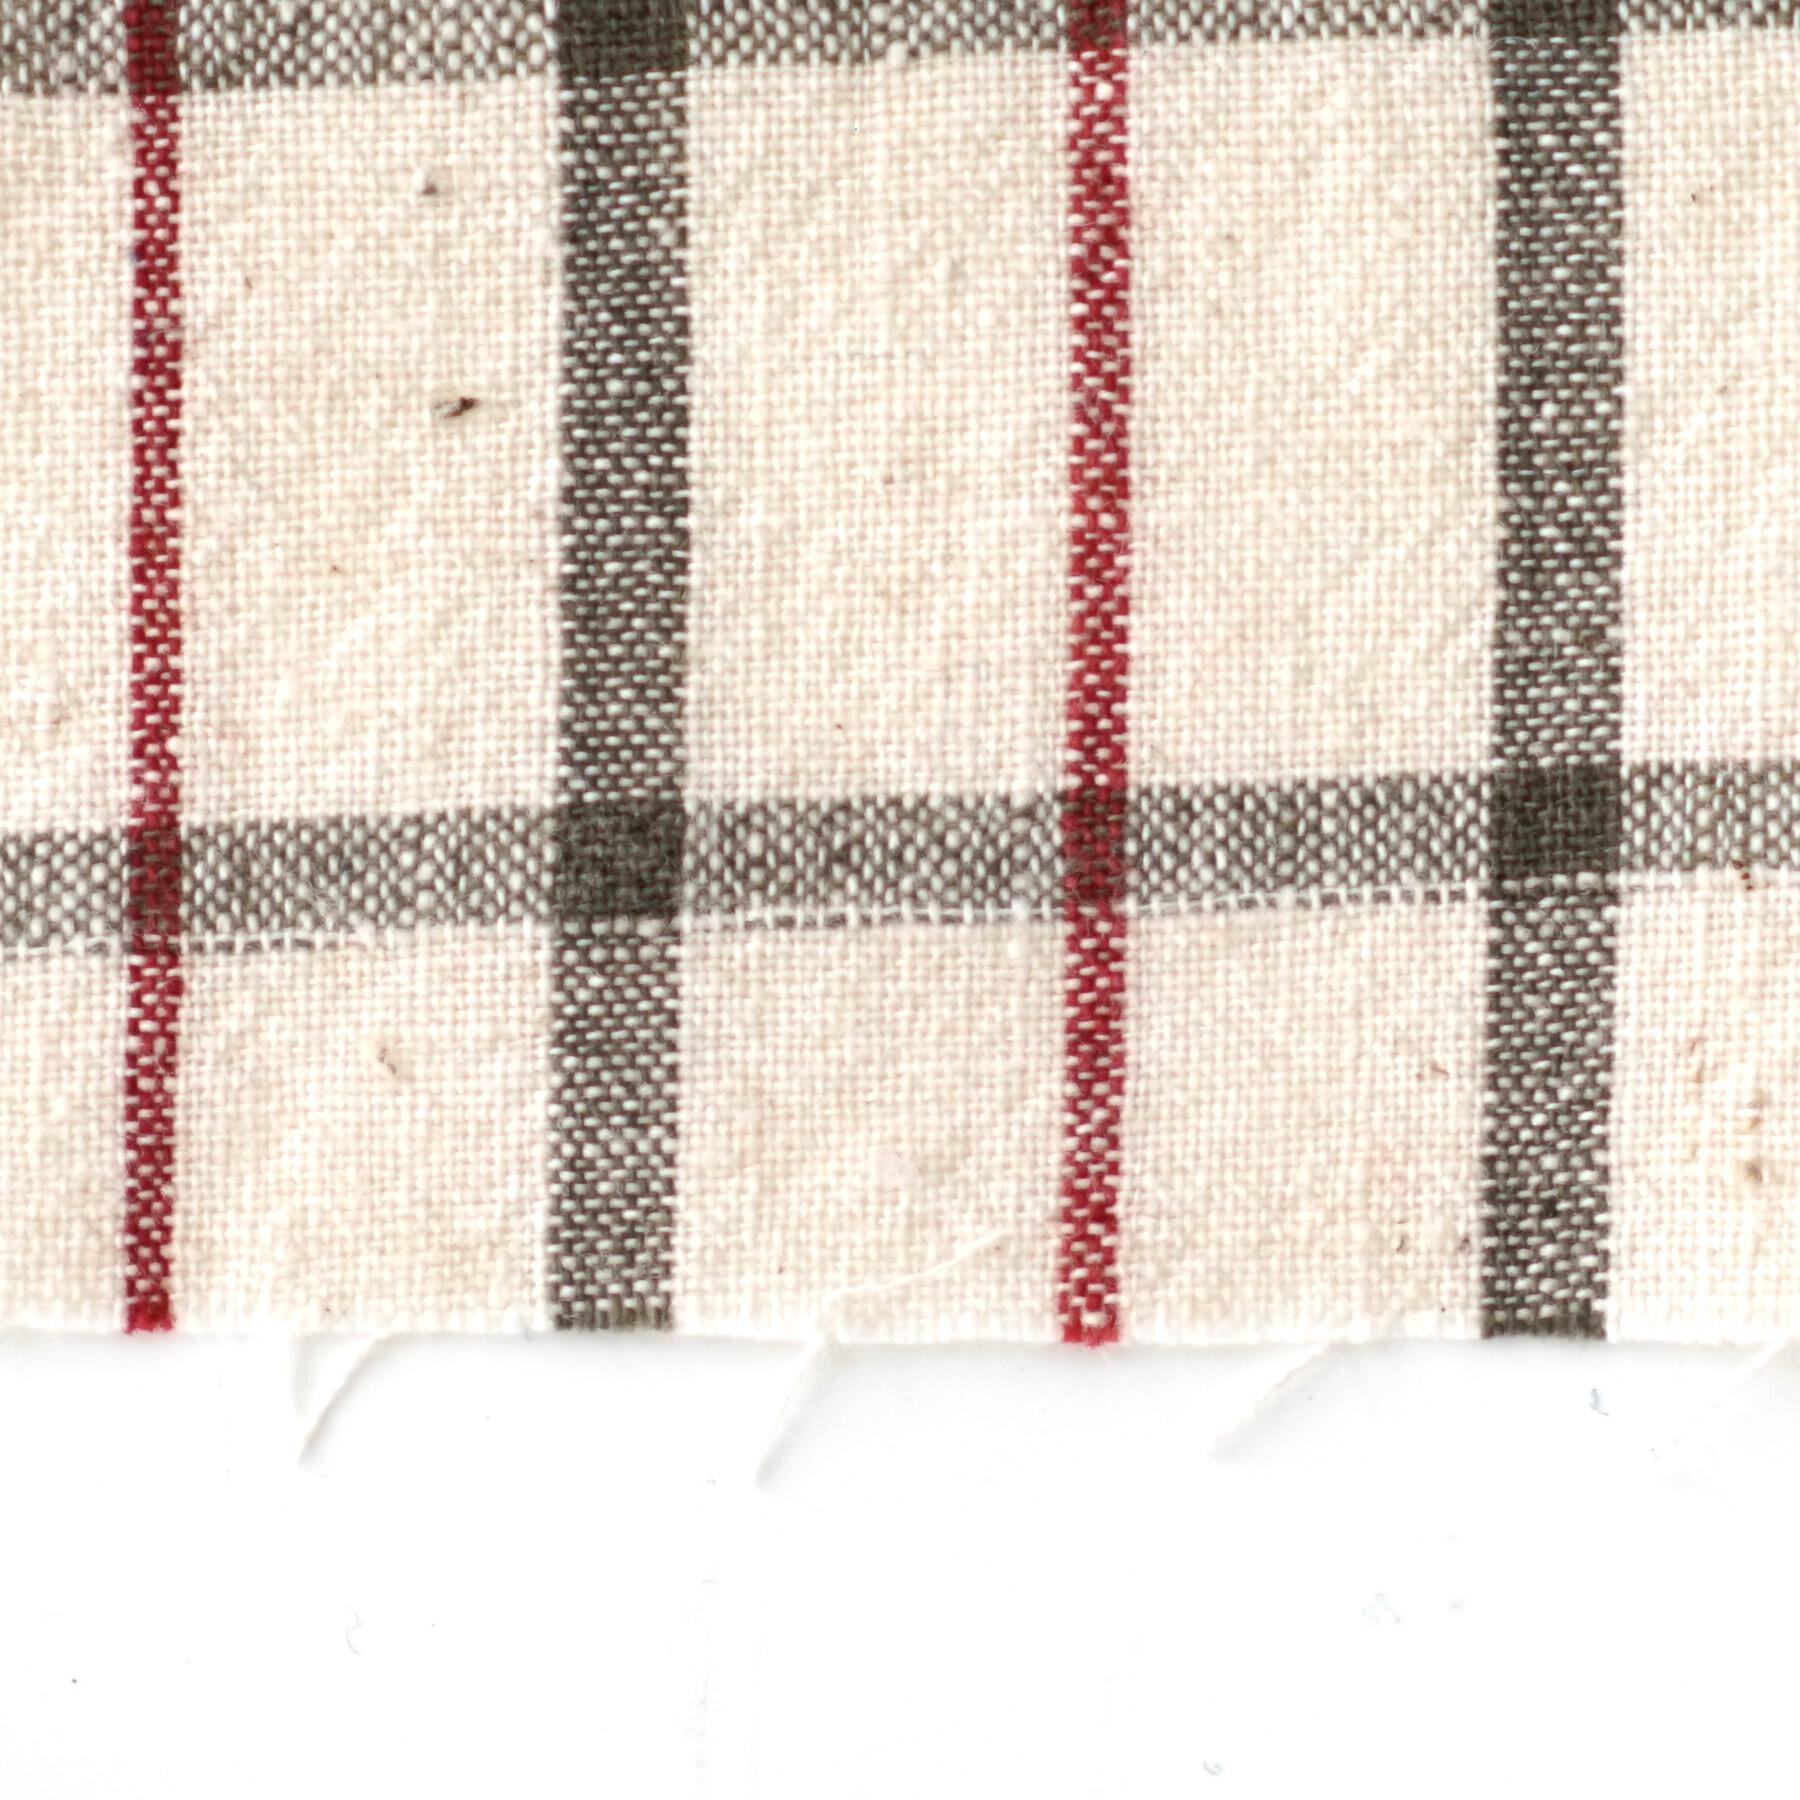 100% Handloom Woven Cotton - White Warp & Weft, Olive Green Warp & Weft, Alizarin Red Warp - Chequers - Close Up